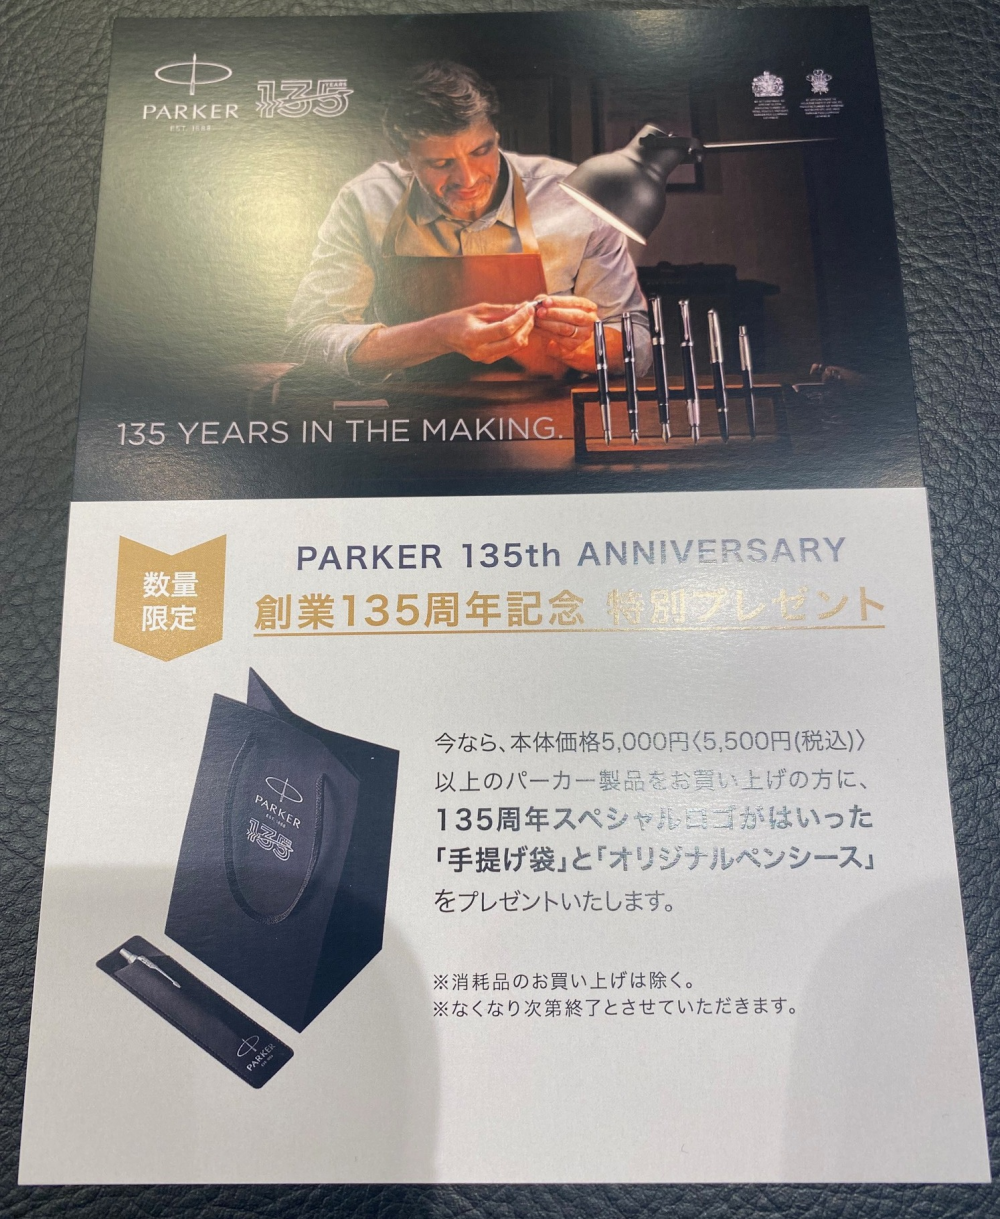 パーカーって創業135周年なんですって